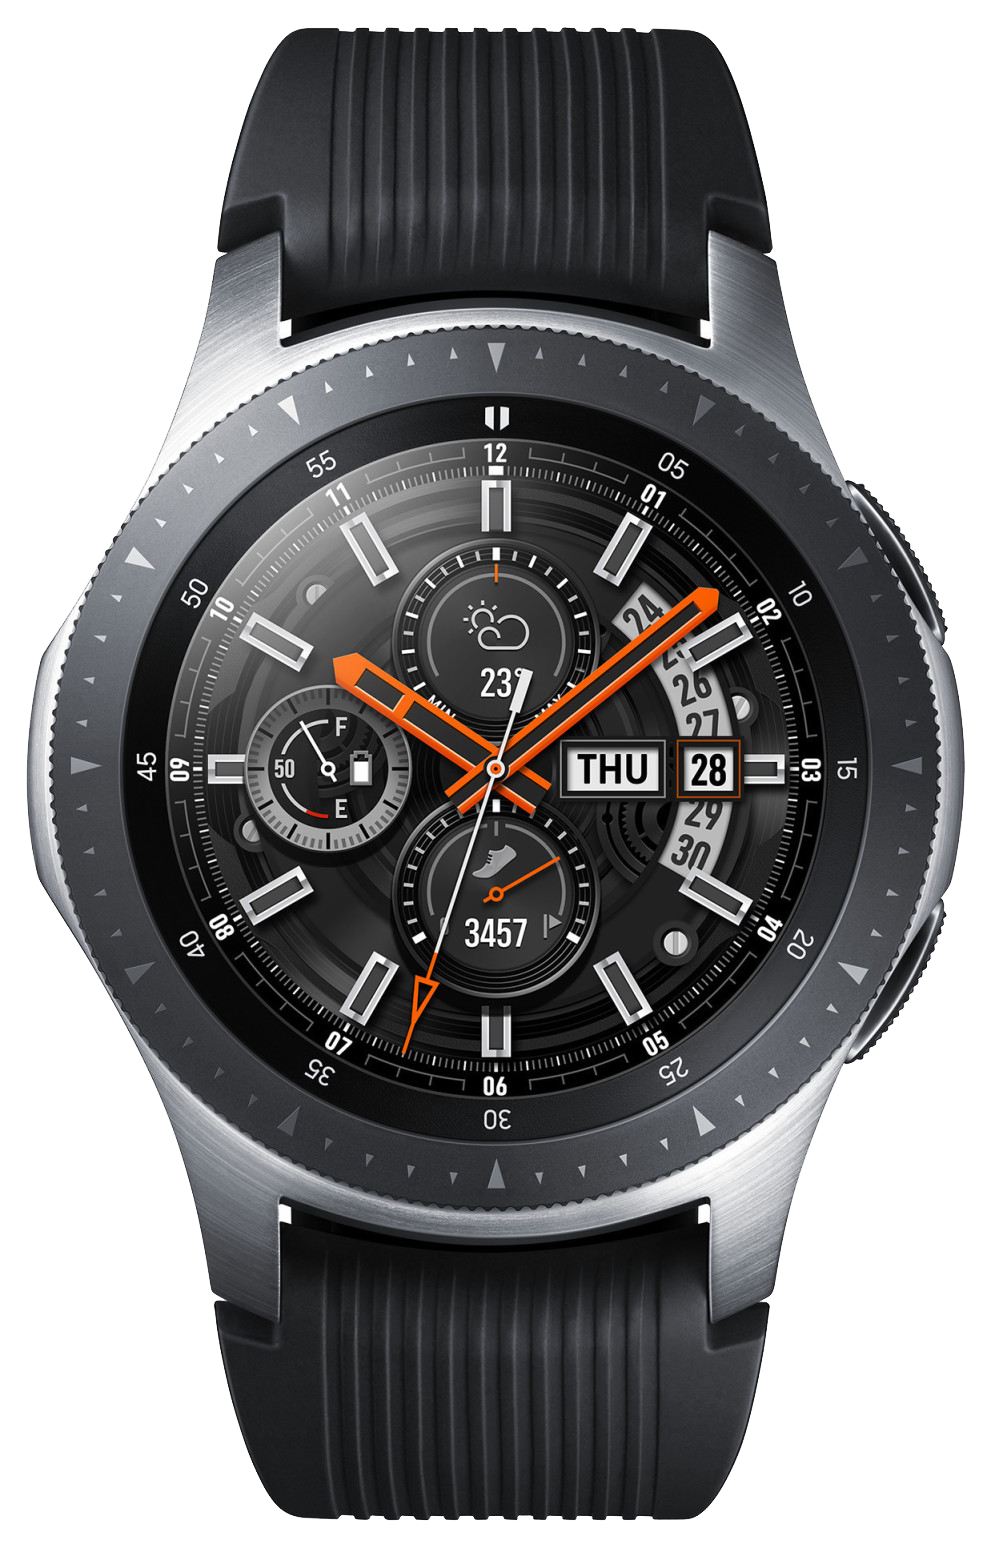 Samsung Galaxy Watch 46mm SM-R800 silber - Ohne Vertrag